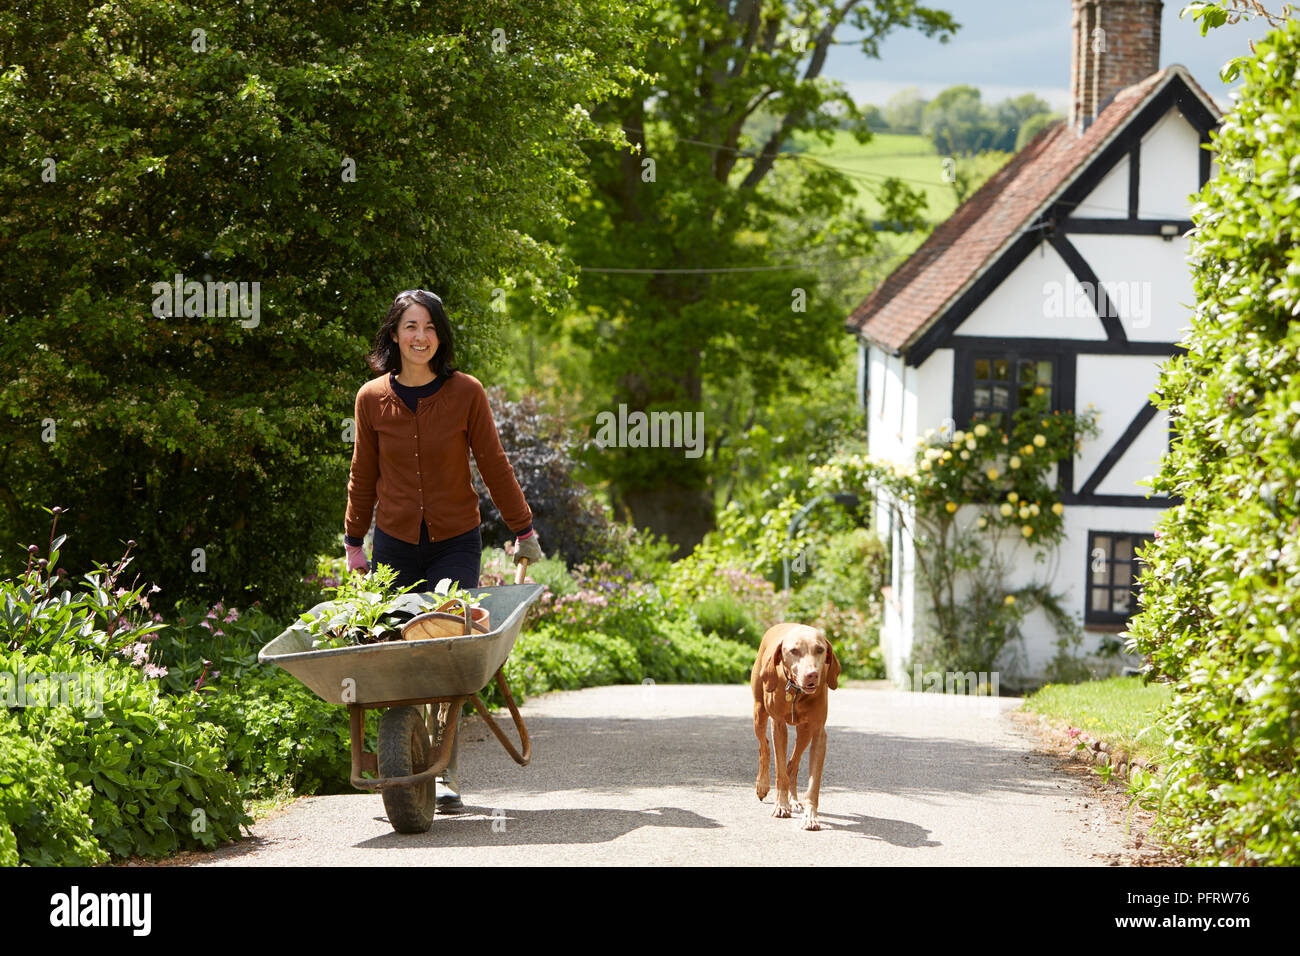 Giardiniere biodinamico carriola spinta riempito con piante, un cane a camminare accanto a lei Foto Stock